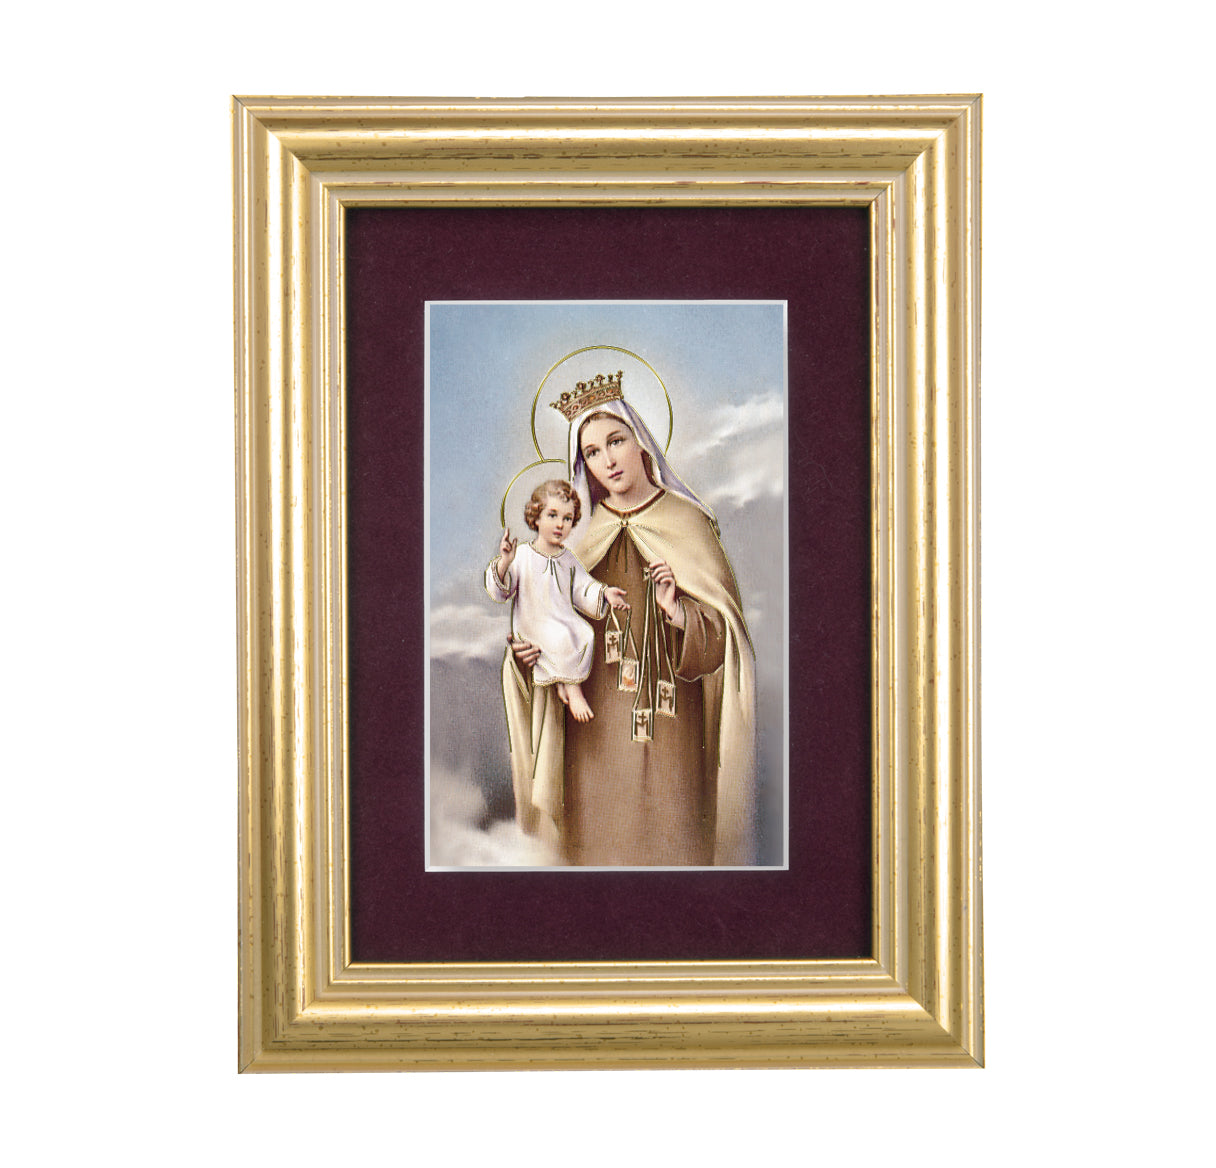 Our Lady of Mount Carmel Framed Art with Maroon Velvet Matting